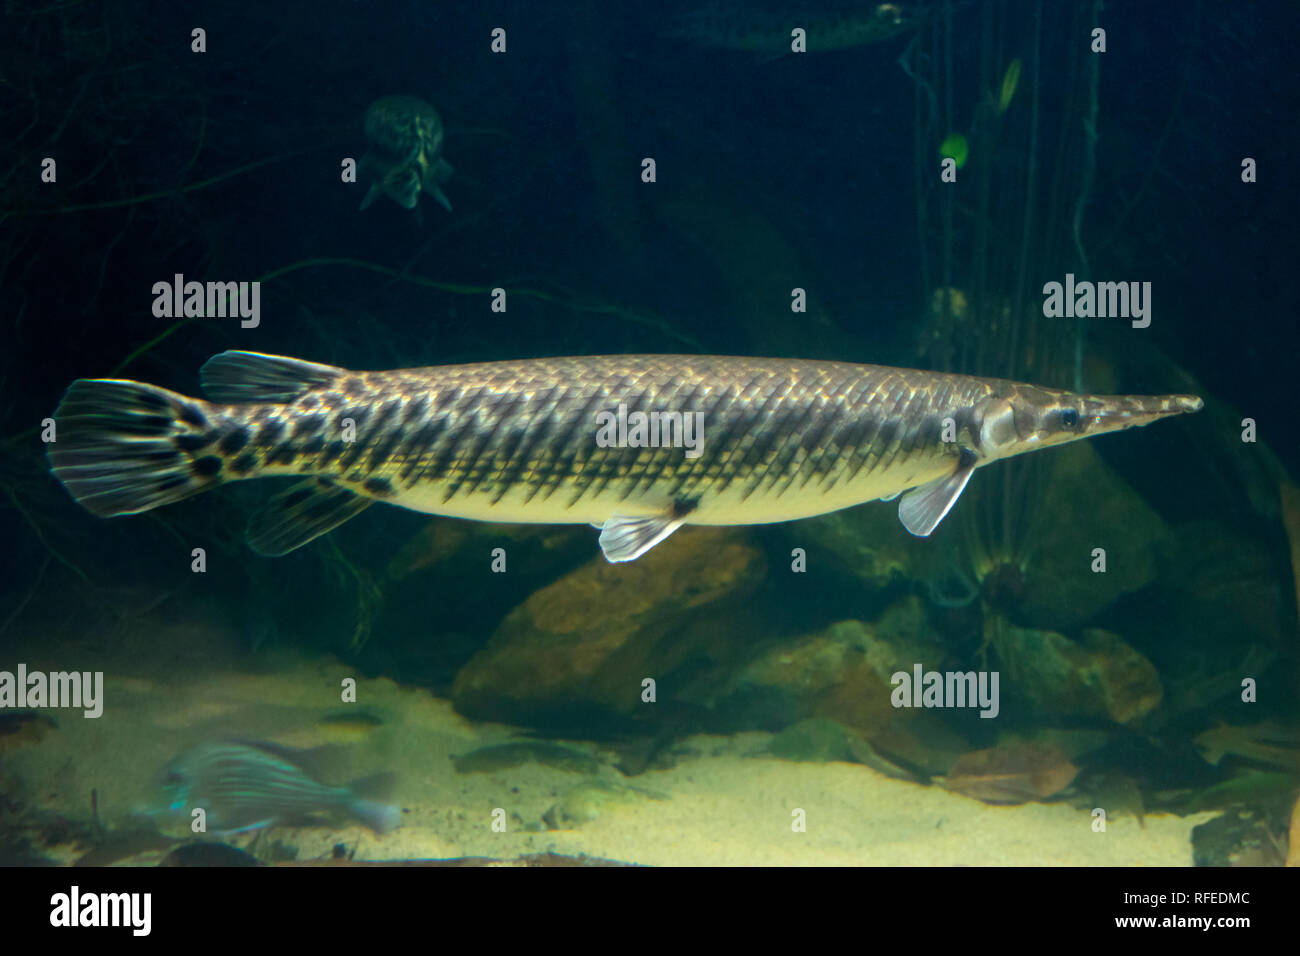 Single Arapaima gigas Fisch, auch als pirarucu bekannt, eine vom Aussterben bedrohte Tierart Stockfoto